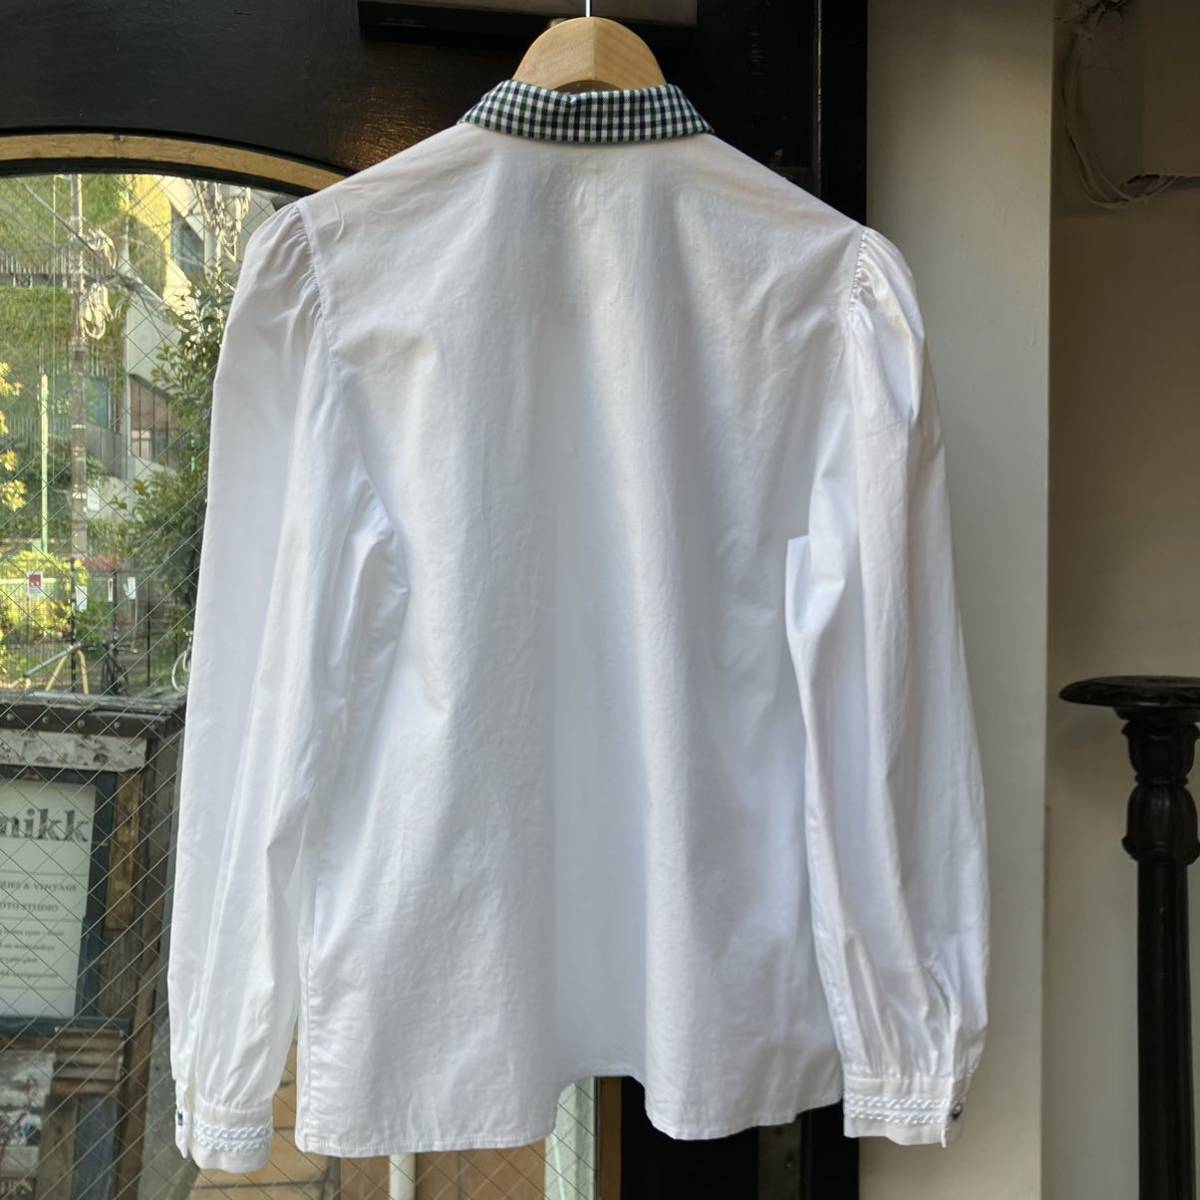 イギリス古着 blouse vintage shirt チロリアンブラウス ブラウス シャツ 長袖 半袖 長袖シャツ 白シャツ LV767_画像9